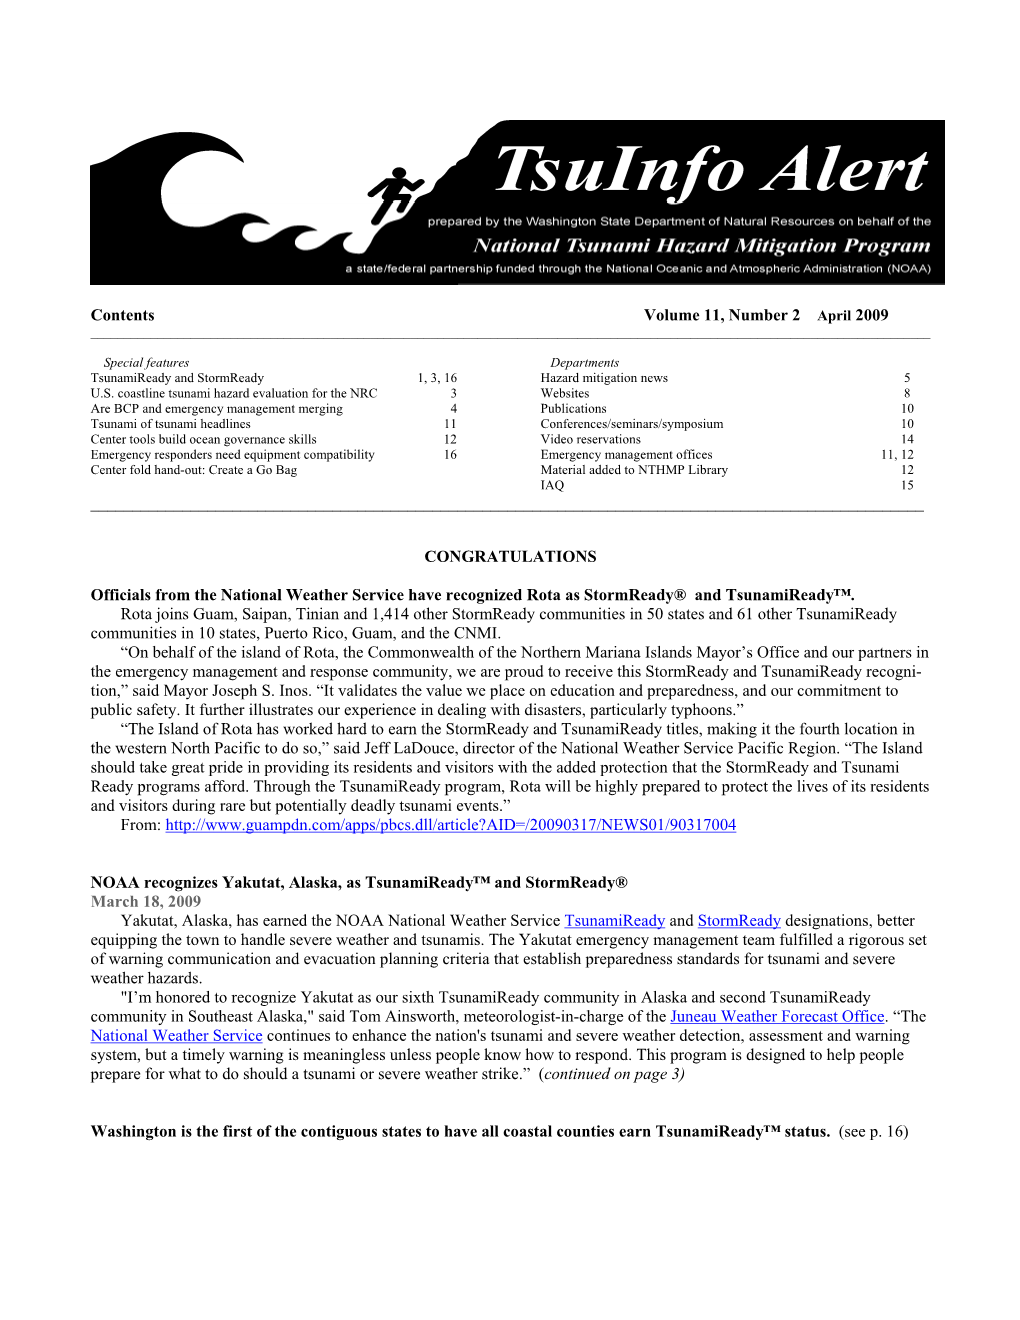 Tsuinfo Alert, April 2009